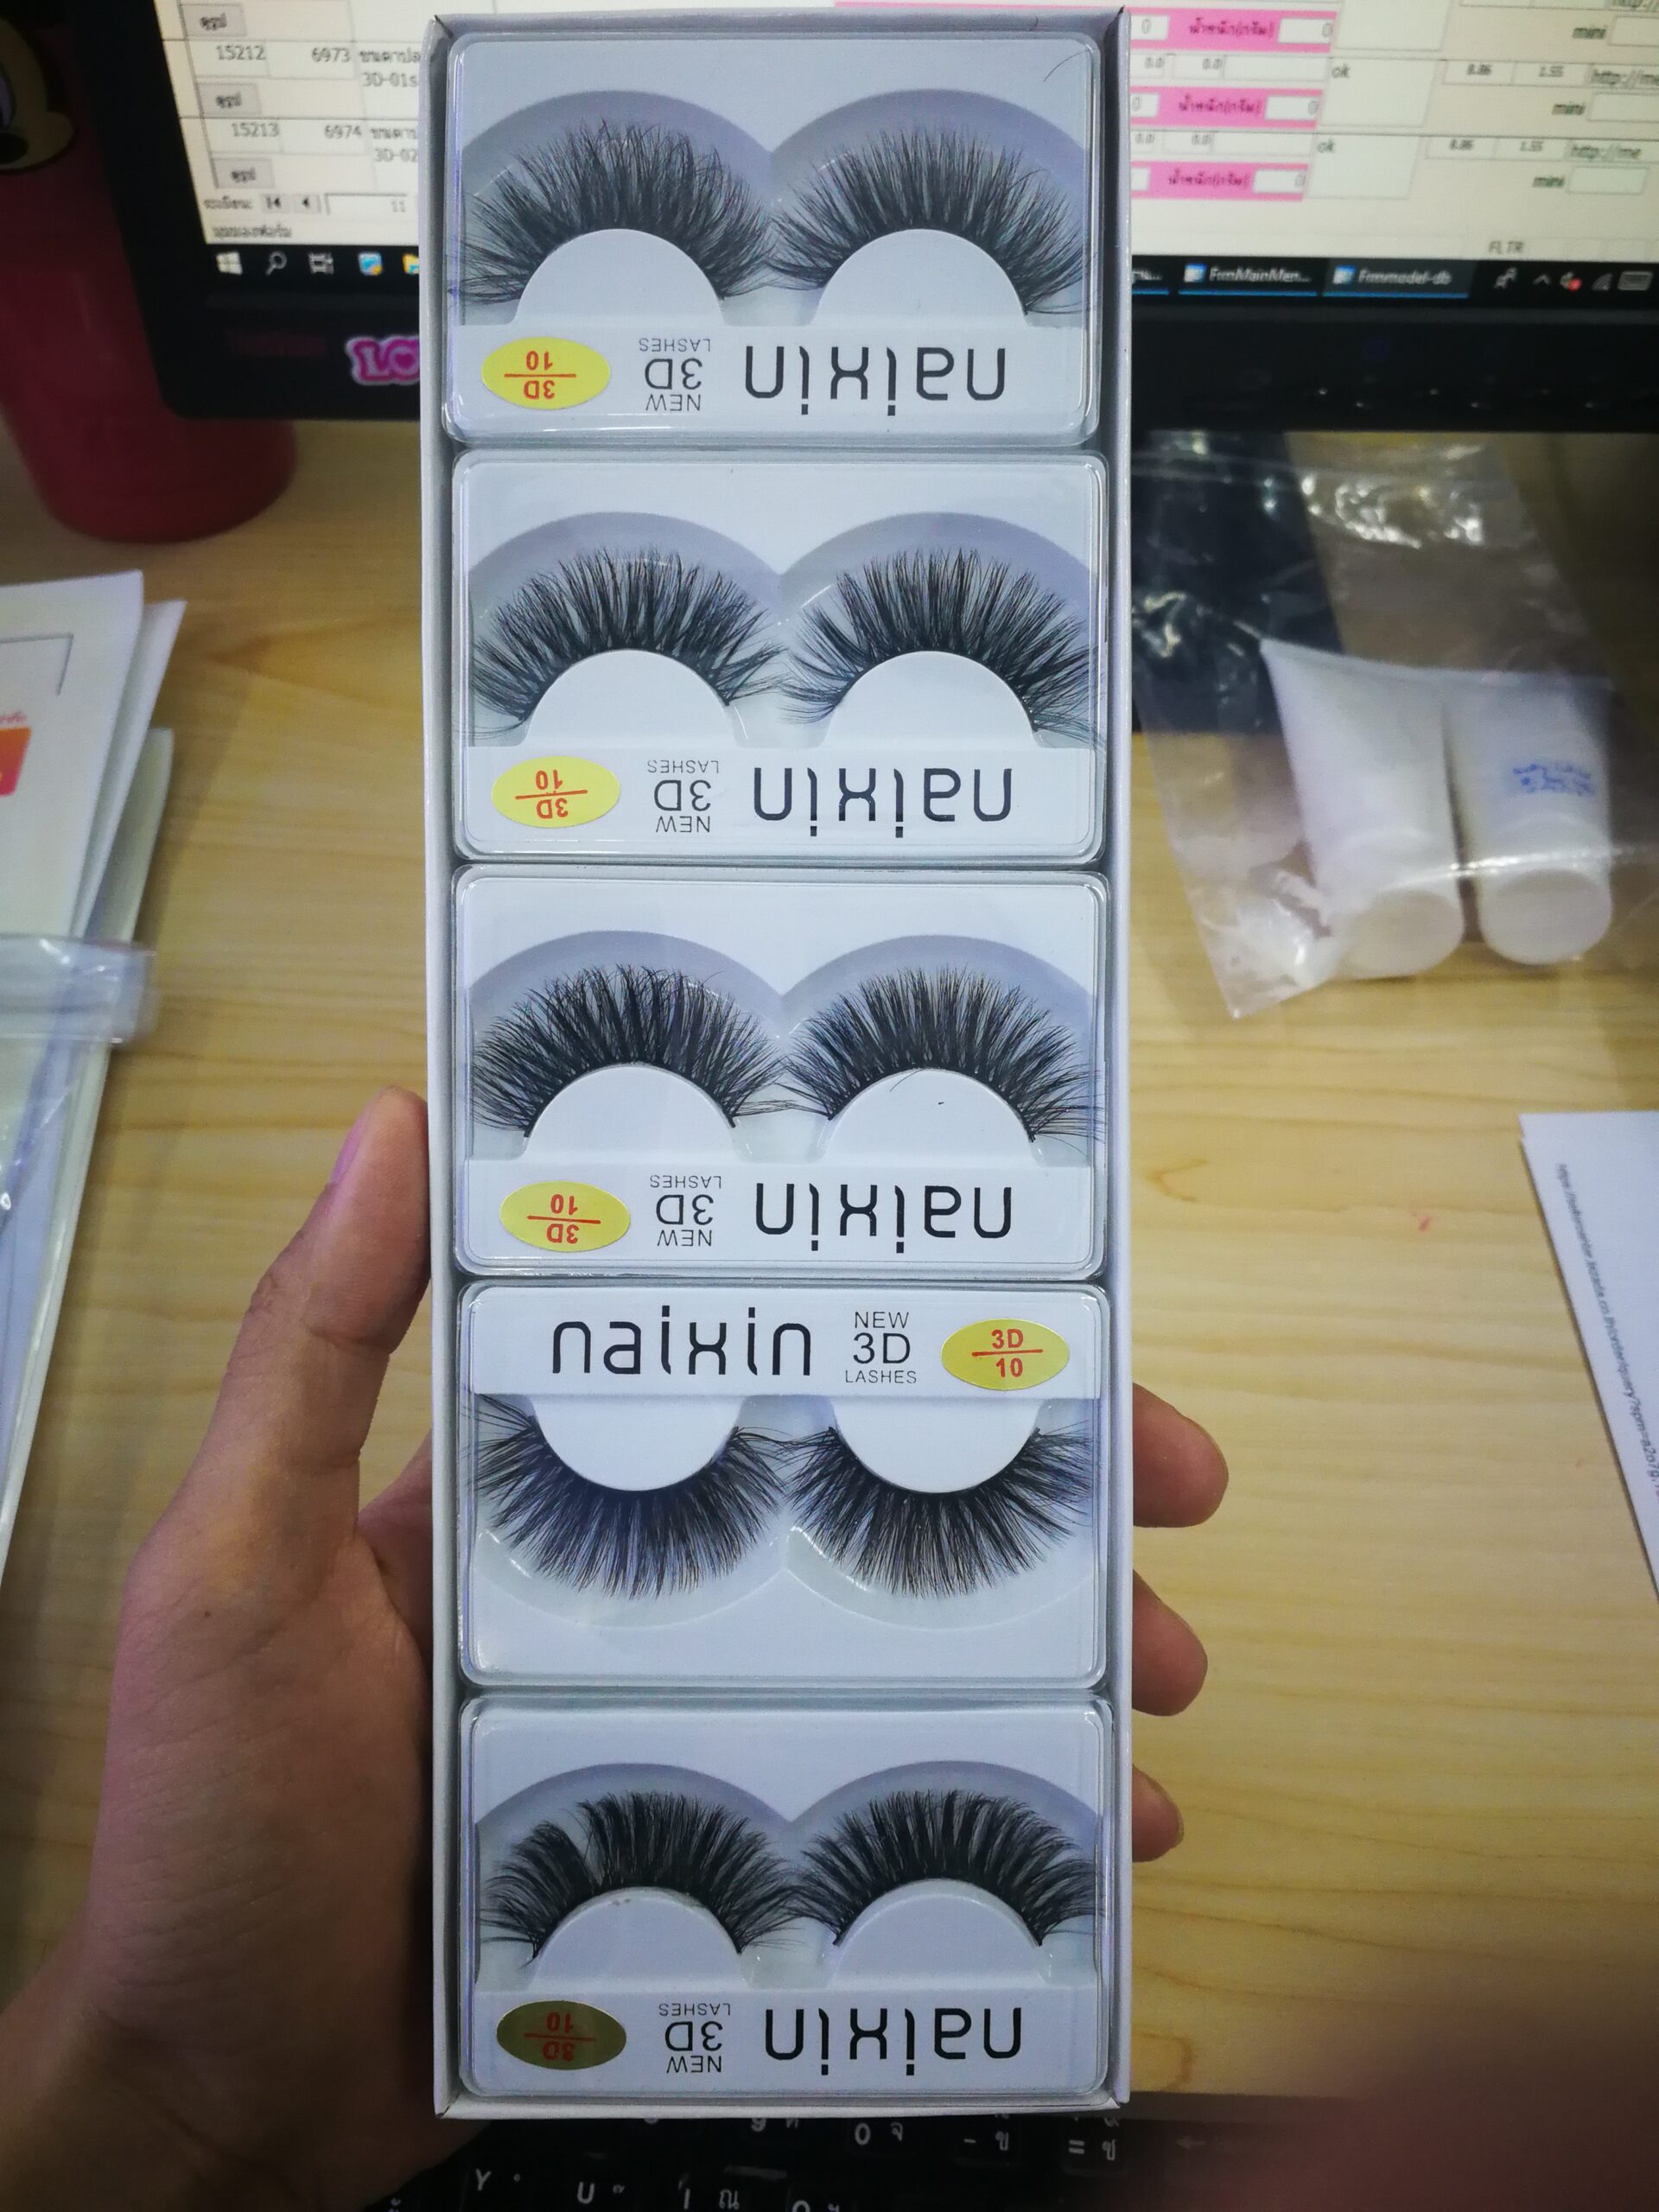 ขายปลีก-ส่ง ขนตาปลอมสวย ขนตาปลอม3มิติ 3D ราคาถูก